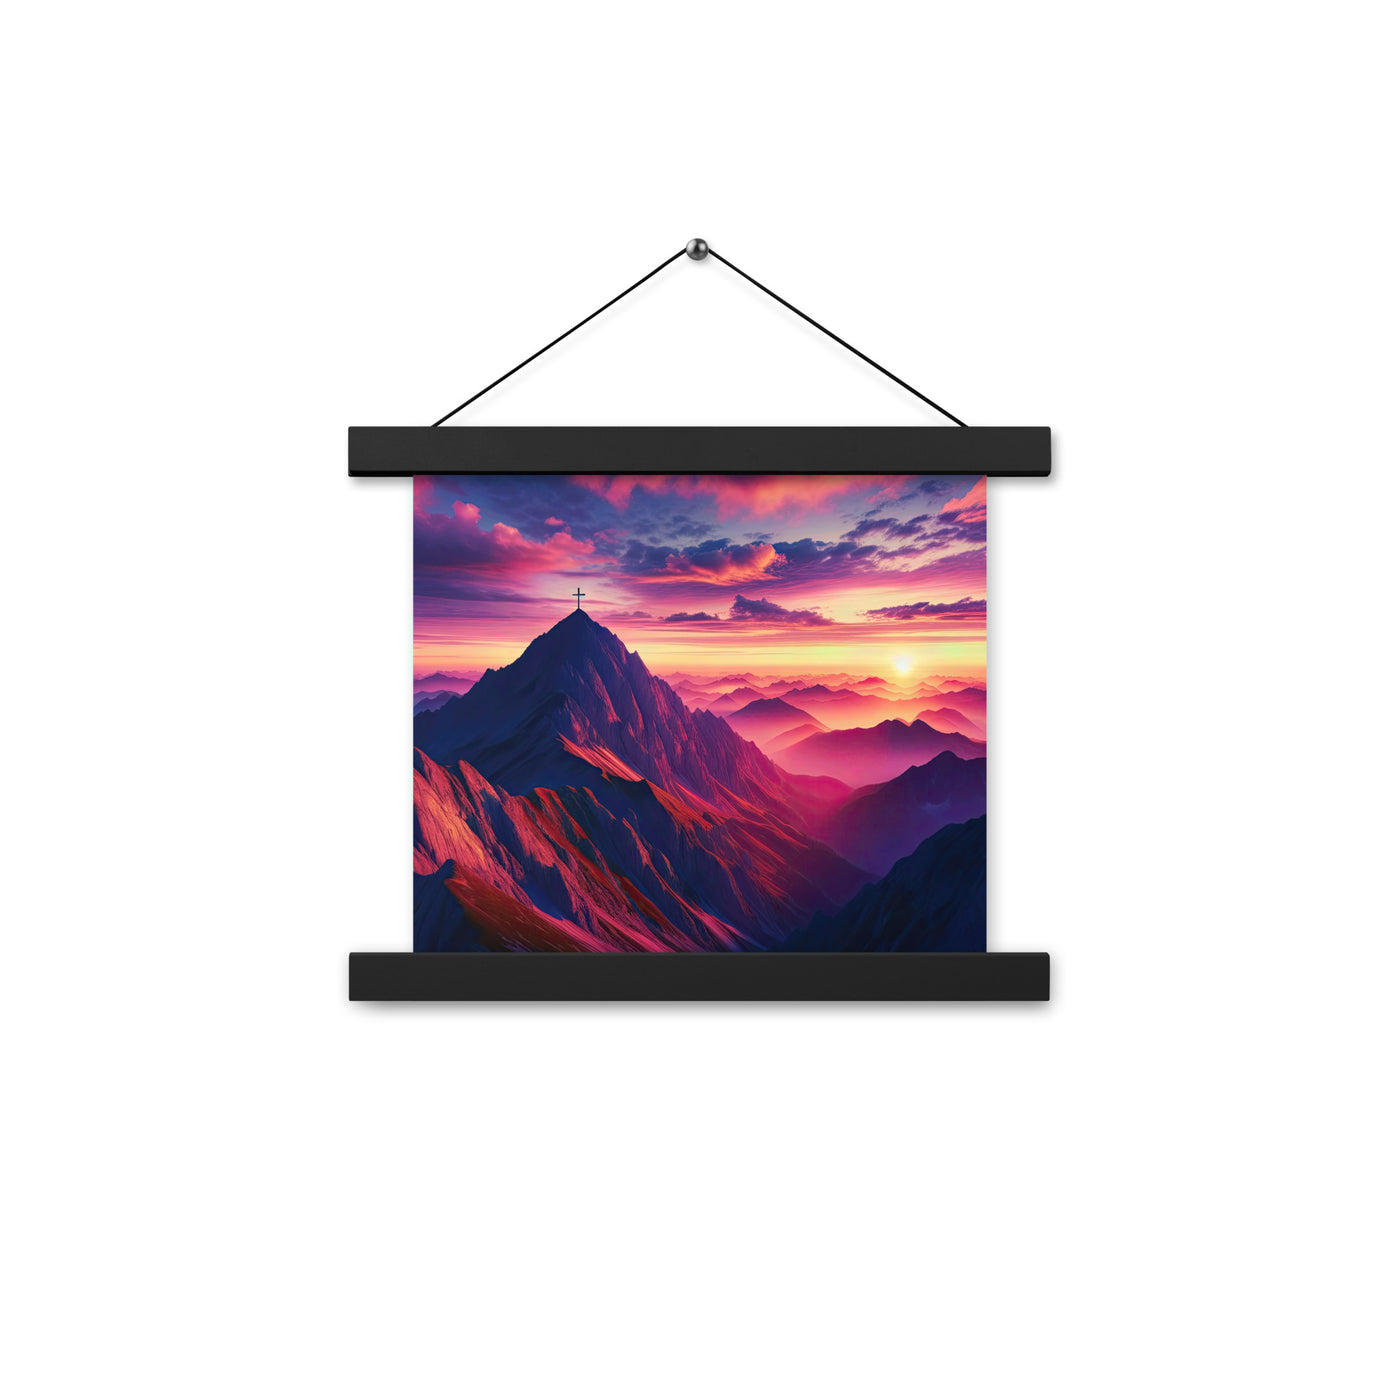 Dramatischer Alpen-Sonnenaufgang, Gipfelkreuz und warme Himmelsfarben - Premium Poster mit Aufhängung berge xxx yyy zzz 25.4 x 25.4 cm